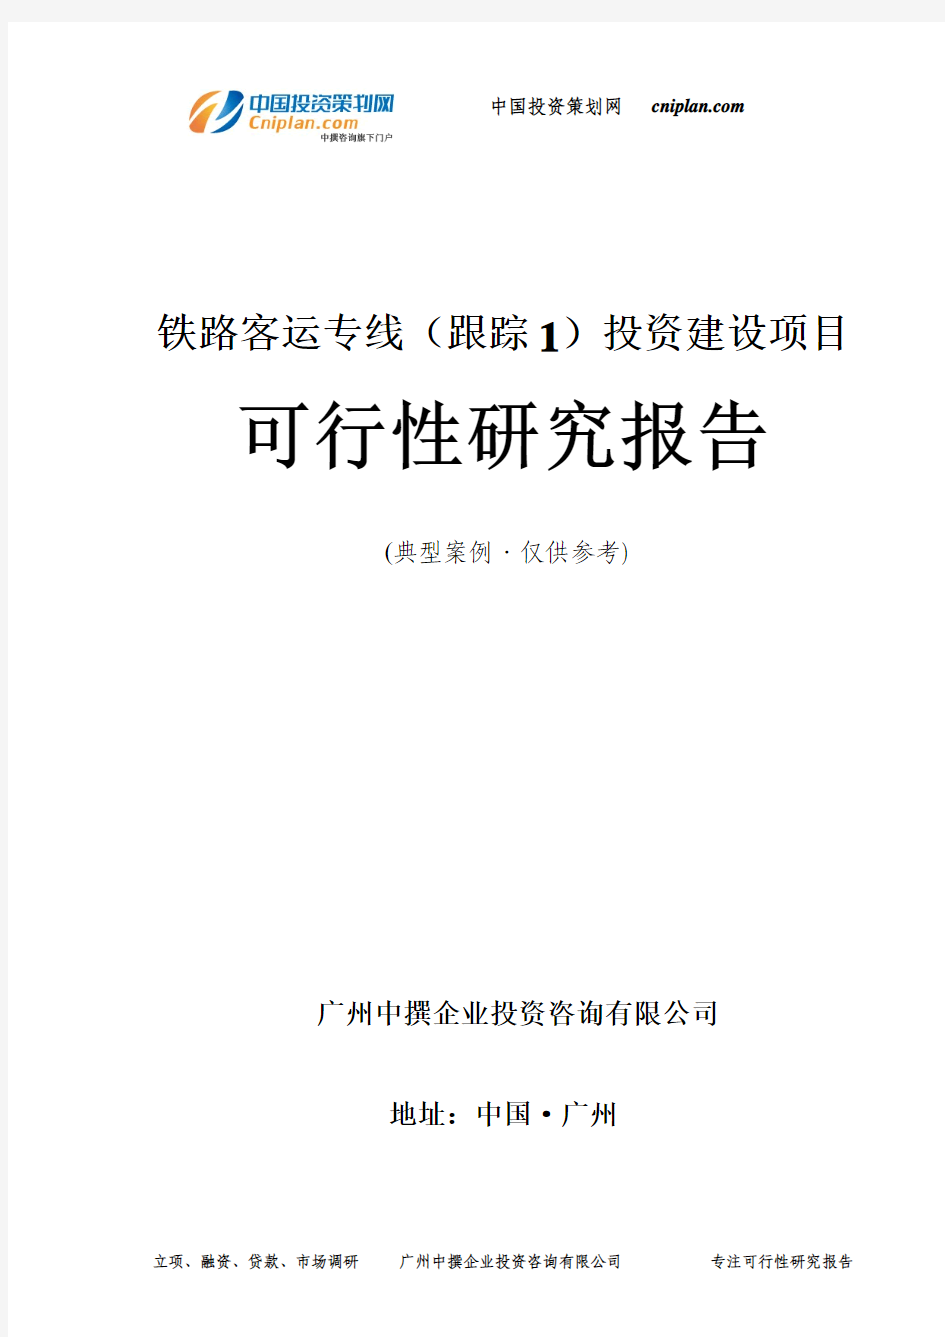 铁路客运专线(跟踪1)投资建设项目可行性研究报告-广州中撰咨询